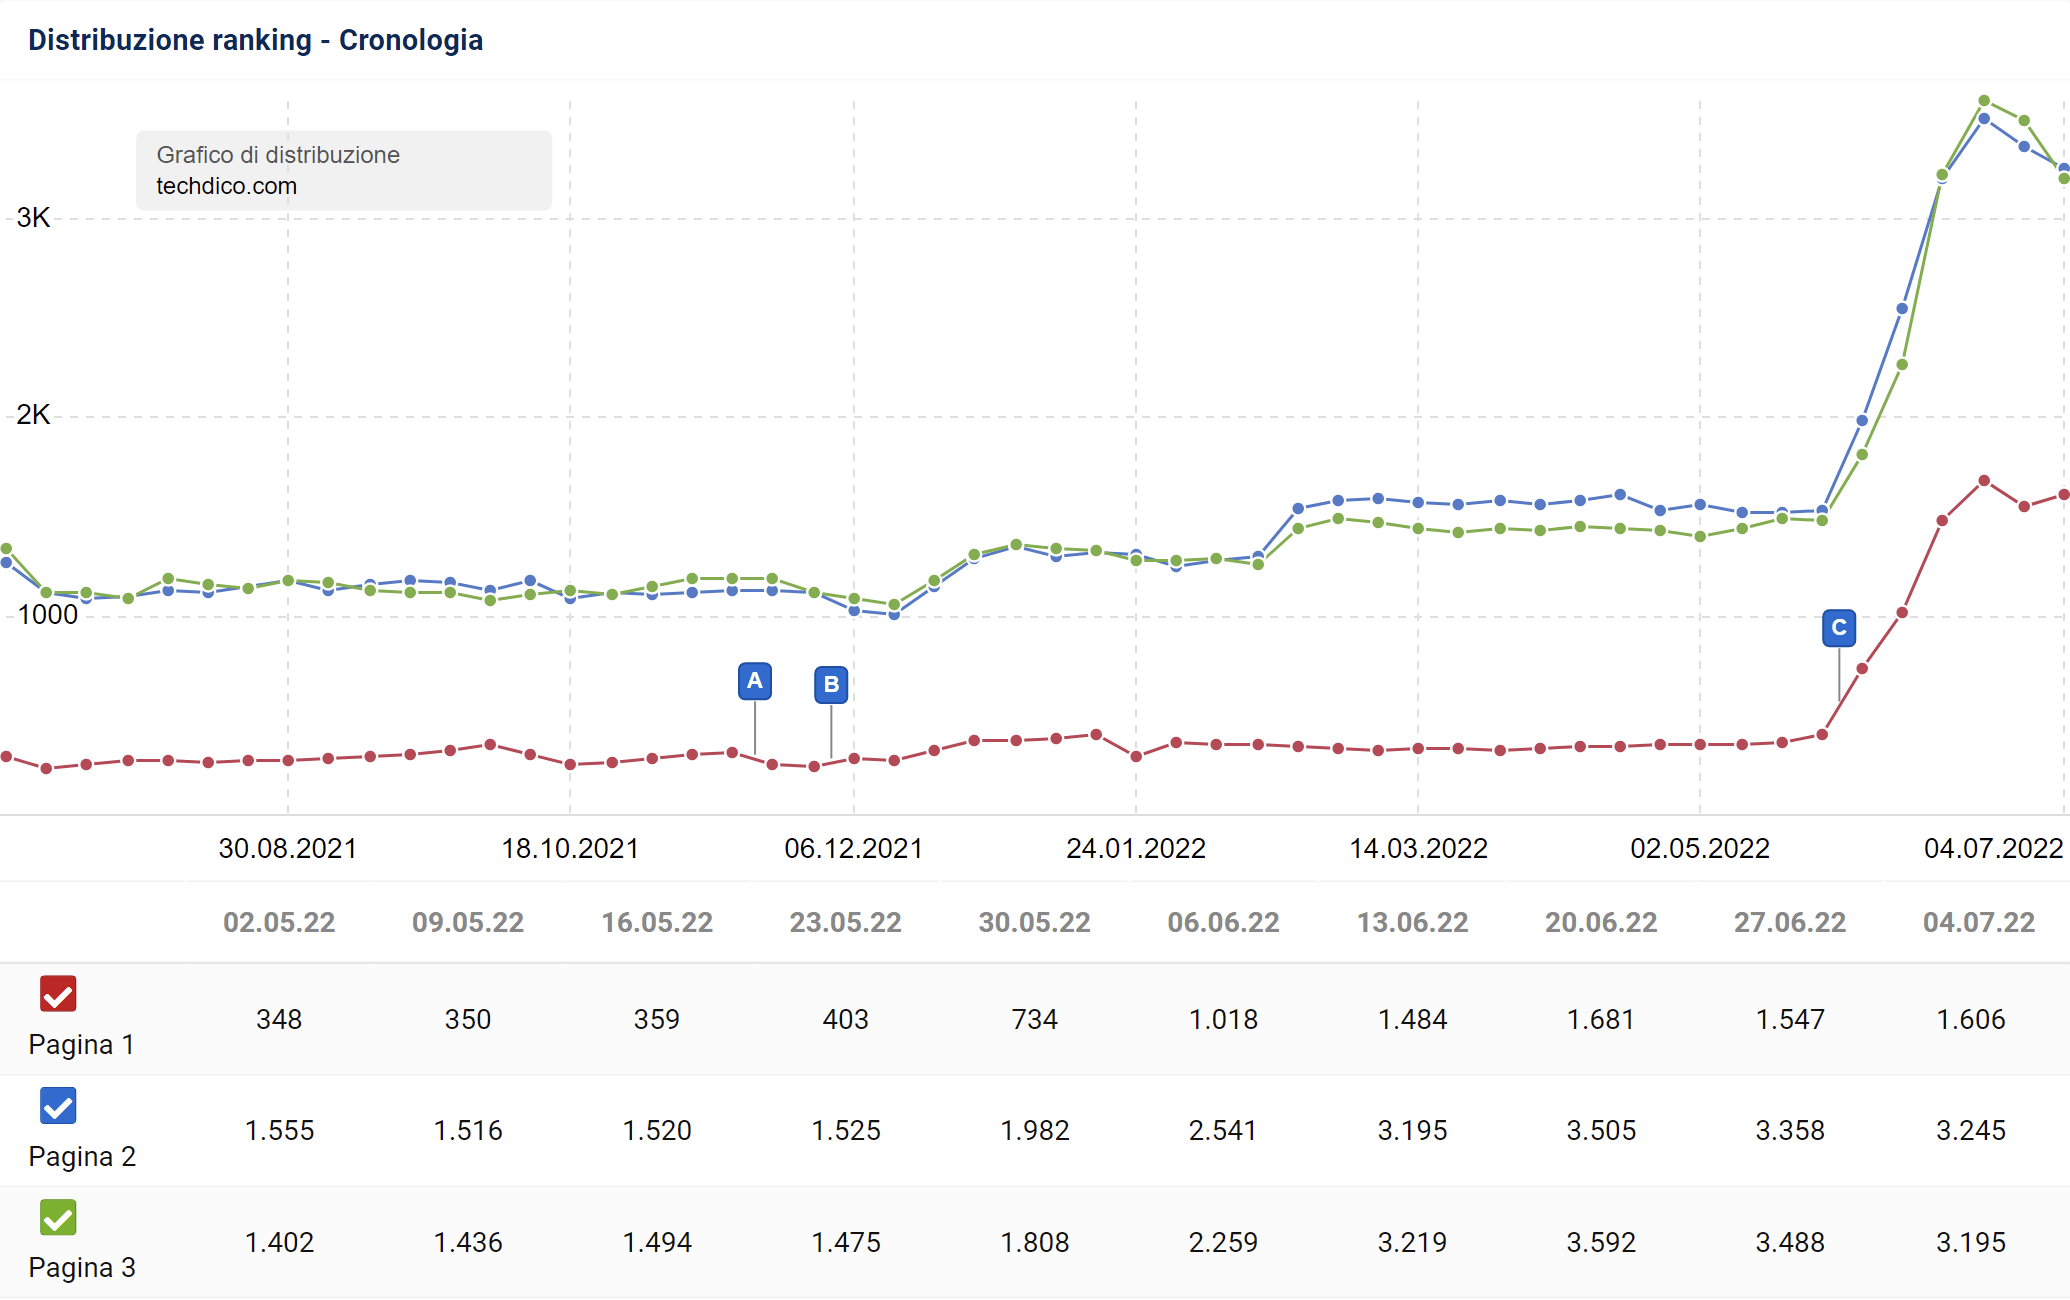 Distribuzione del ranking di techdico.com